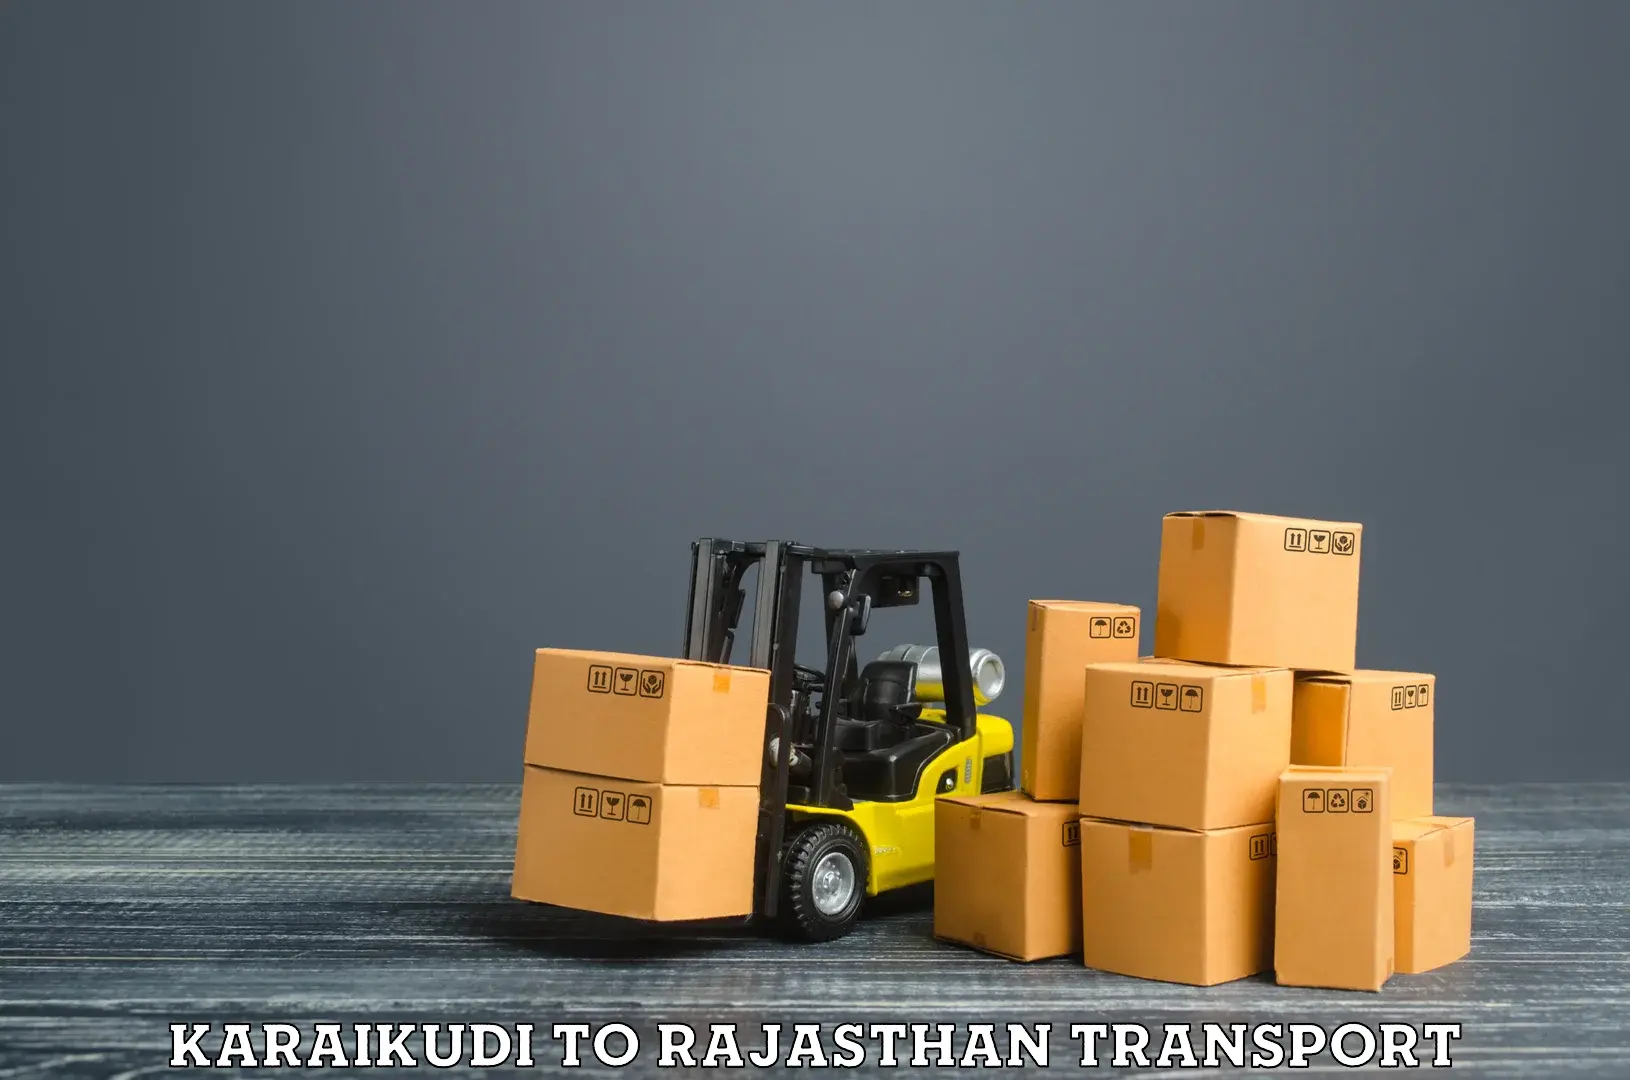 Shipping partner Karaikudi to Nagaur